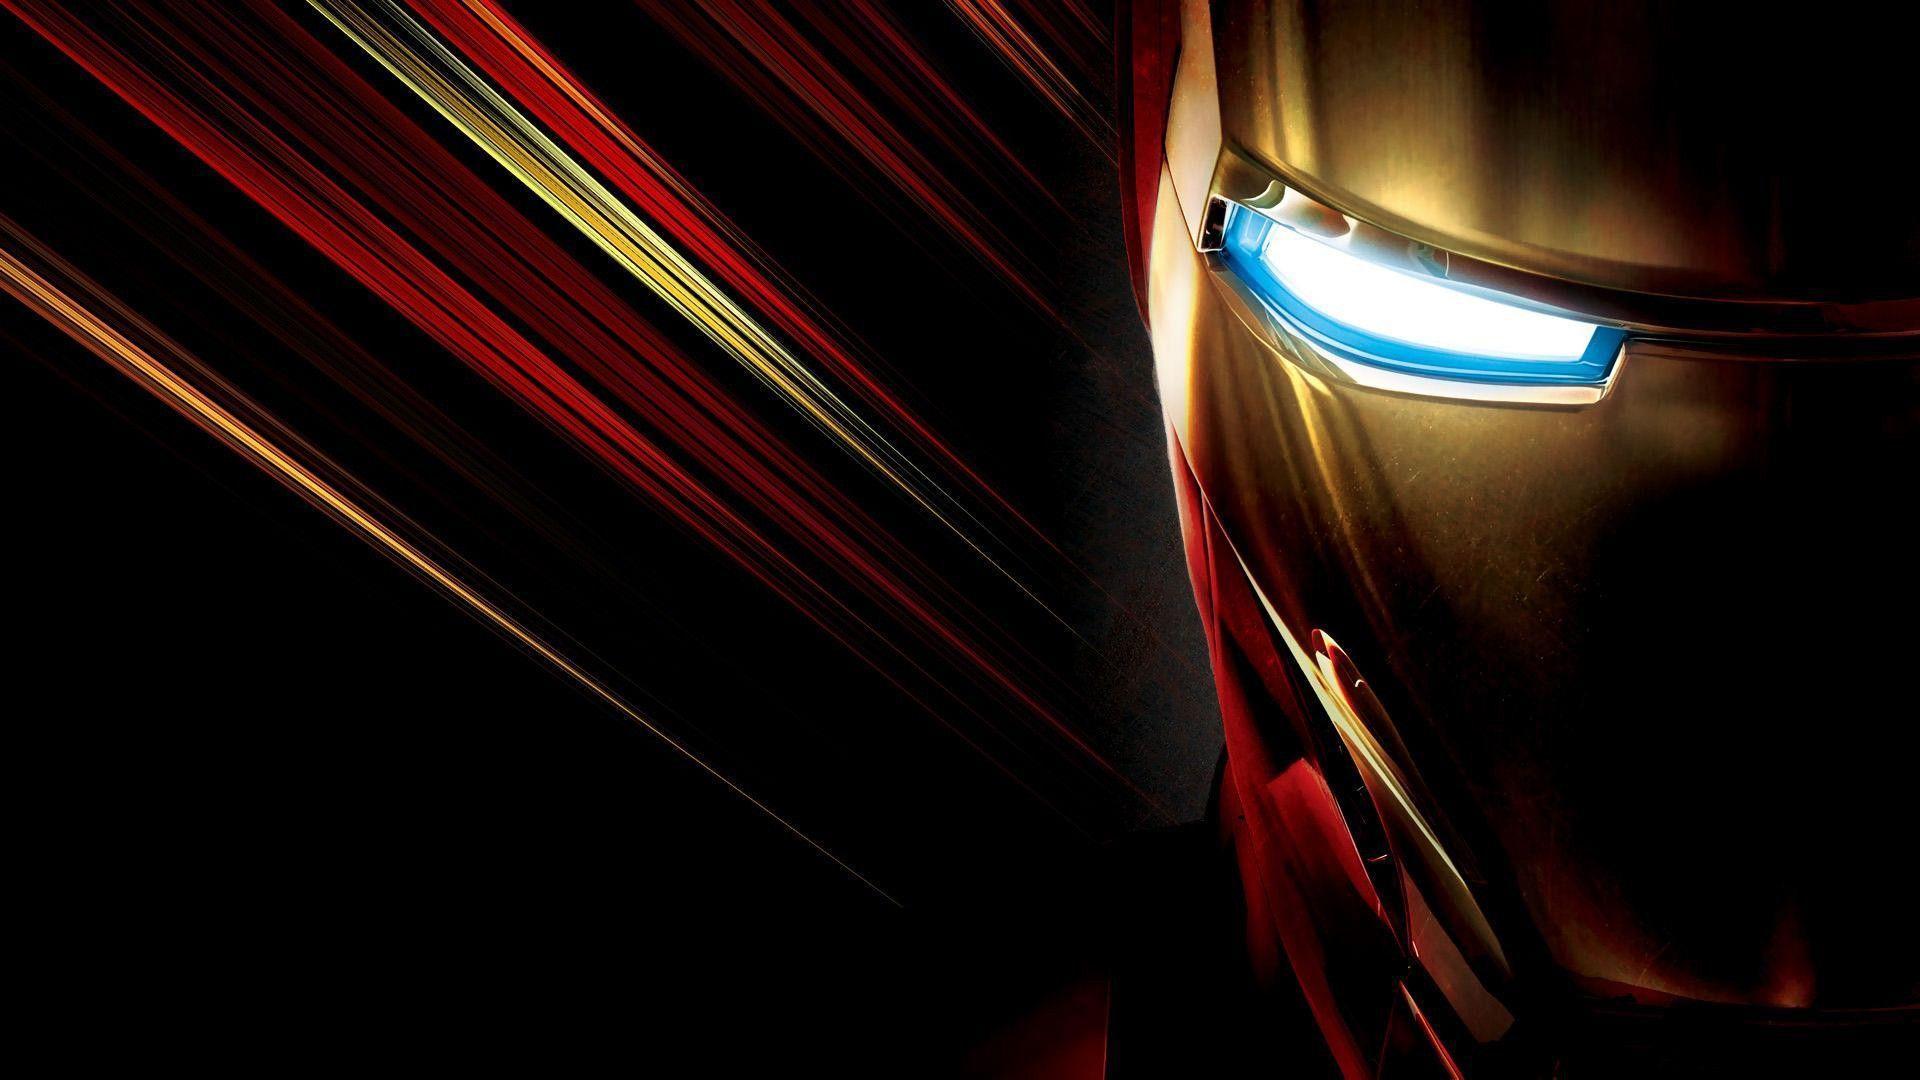 Iron Man Wallpapers - Top Free Iron Man